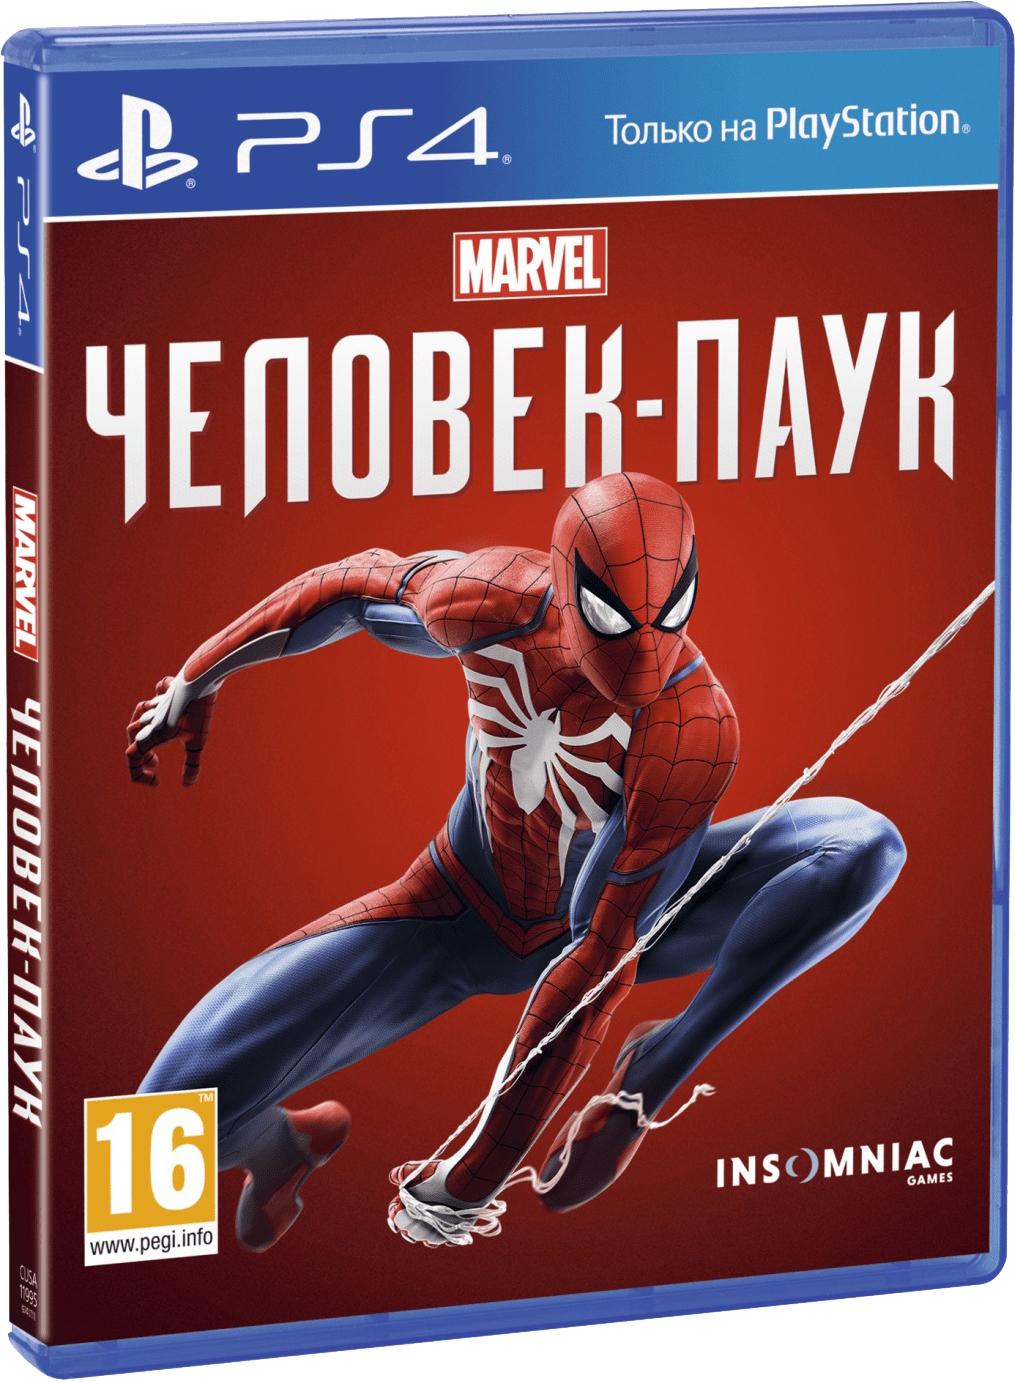 PlayStation Spider-Man